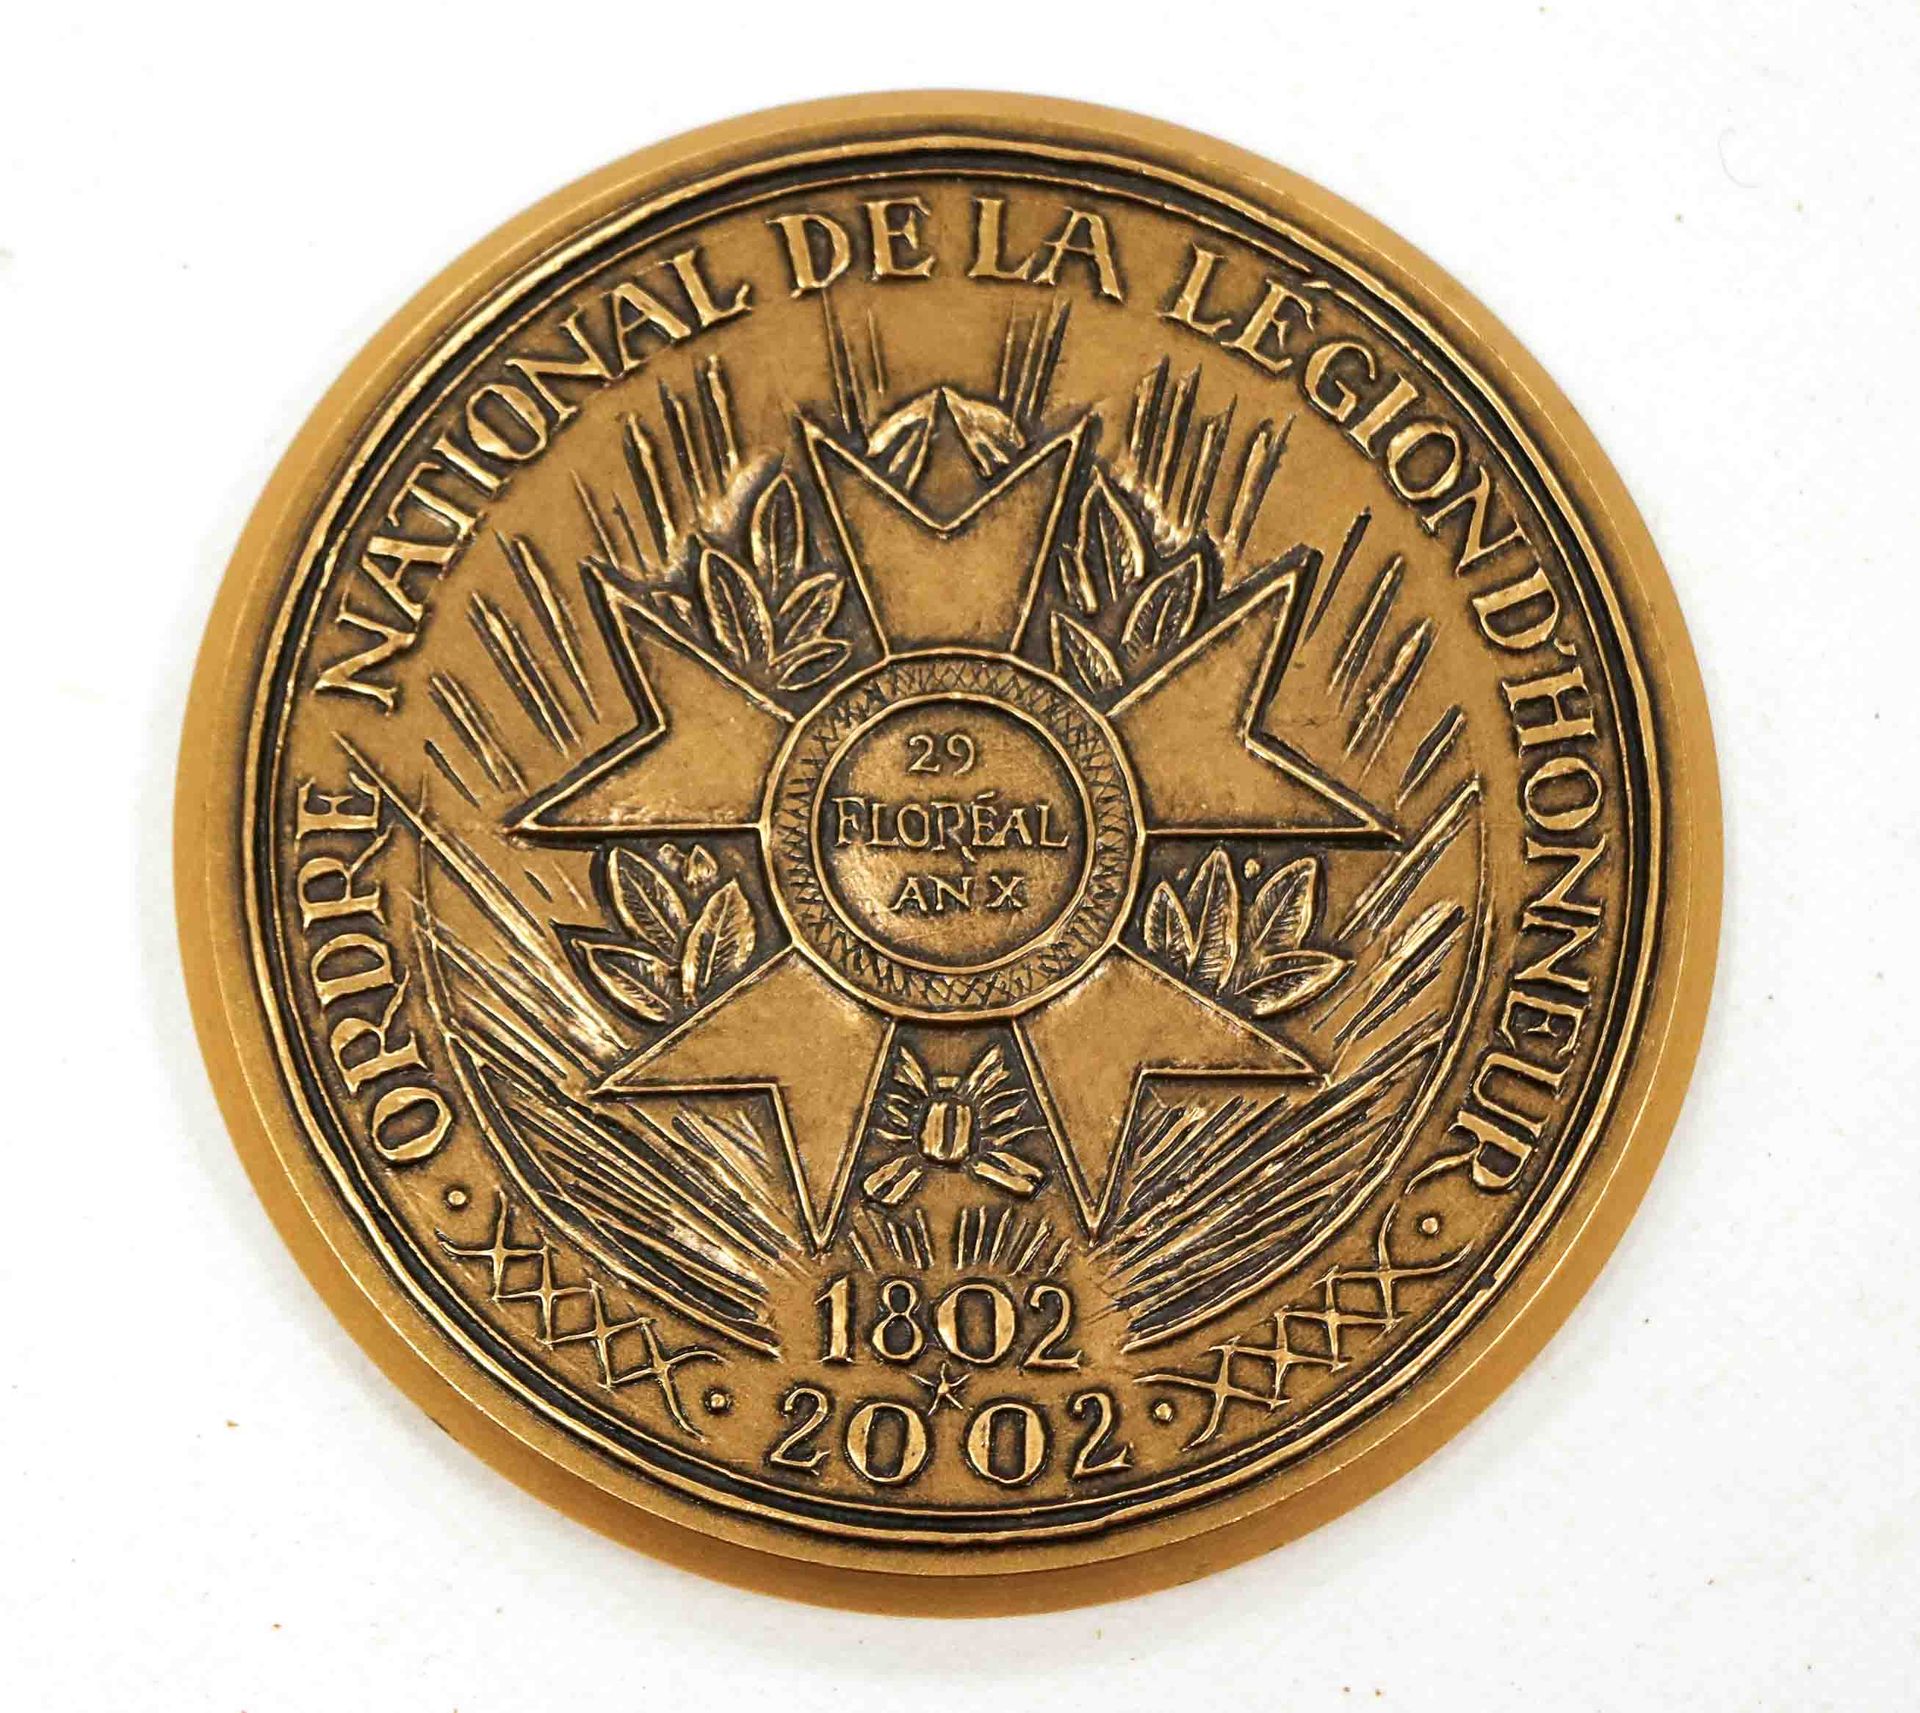 Null Orden Nacional de la Legión de Honor 1802-2002

Medalla de bronce redonda d&hellip;